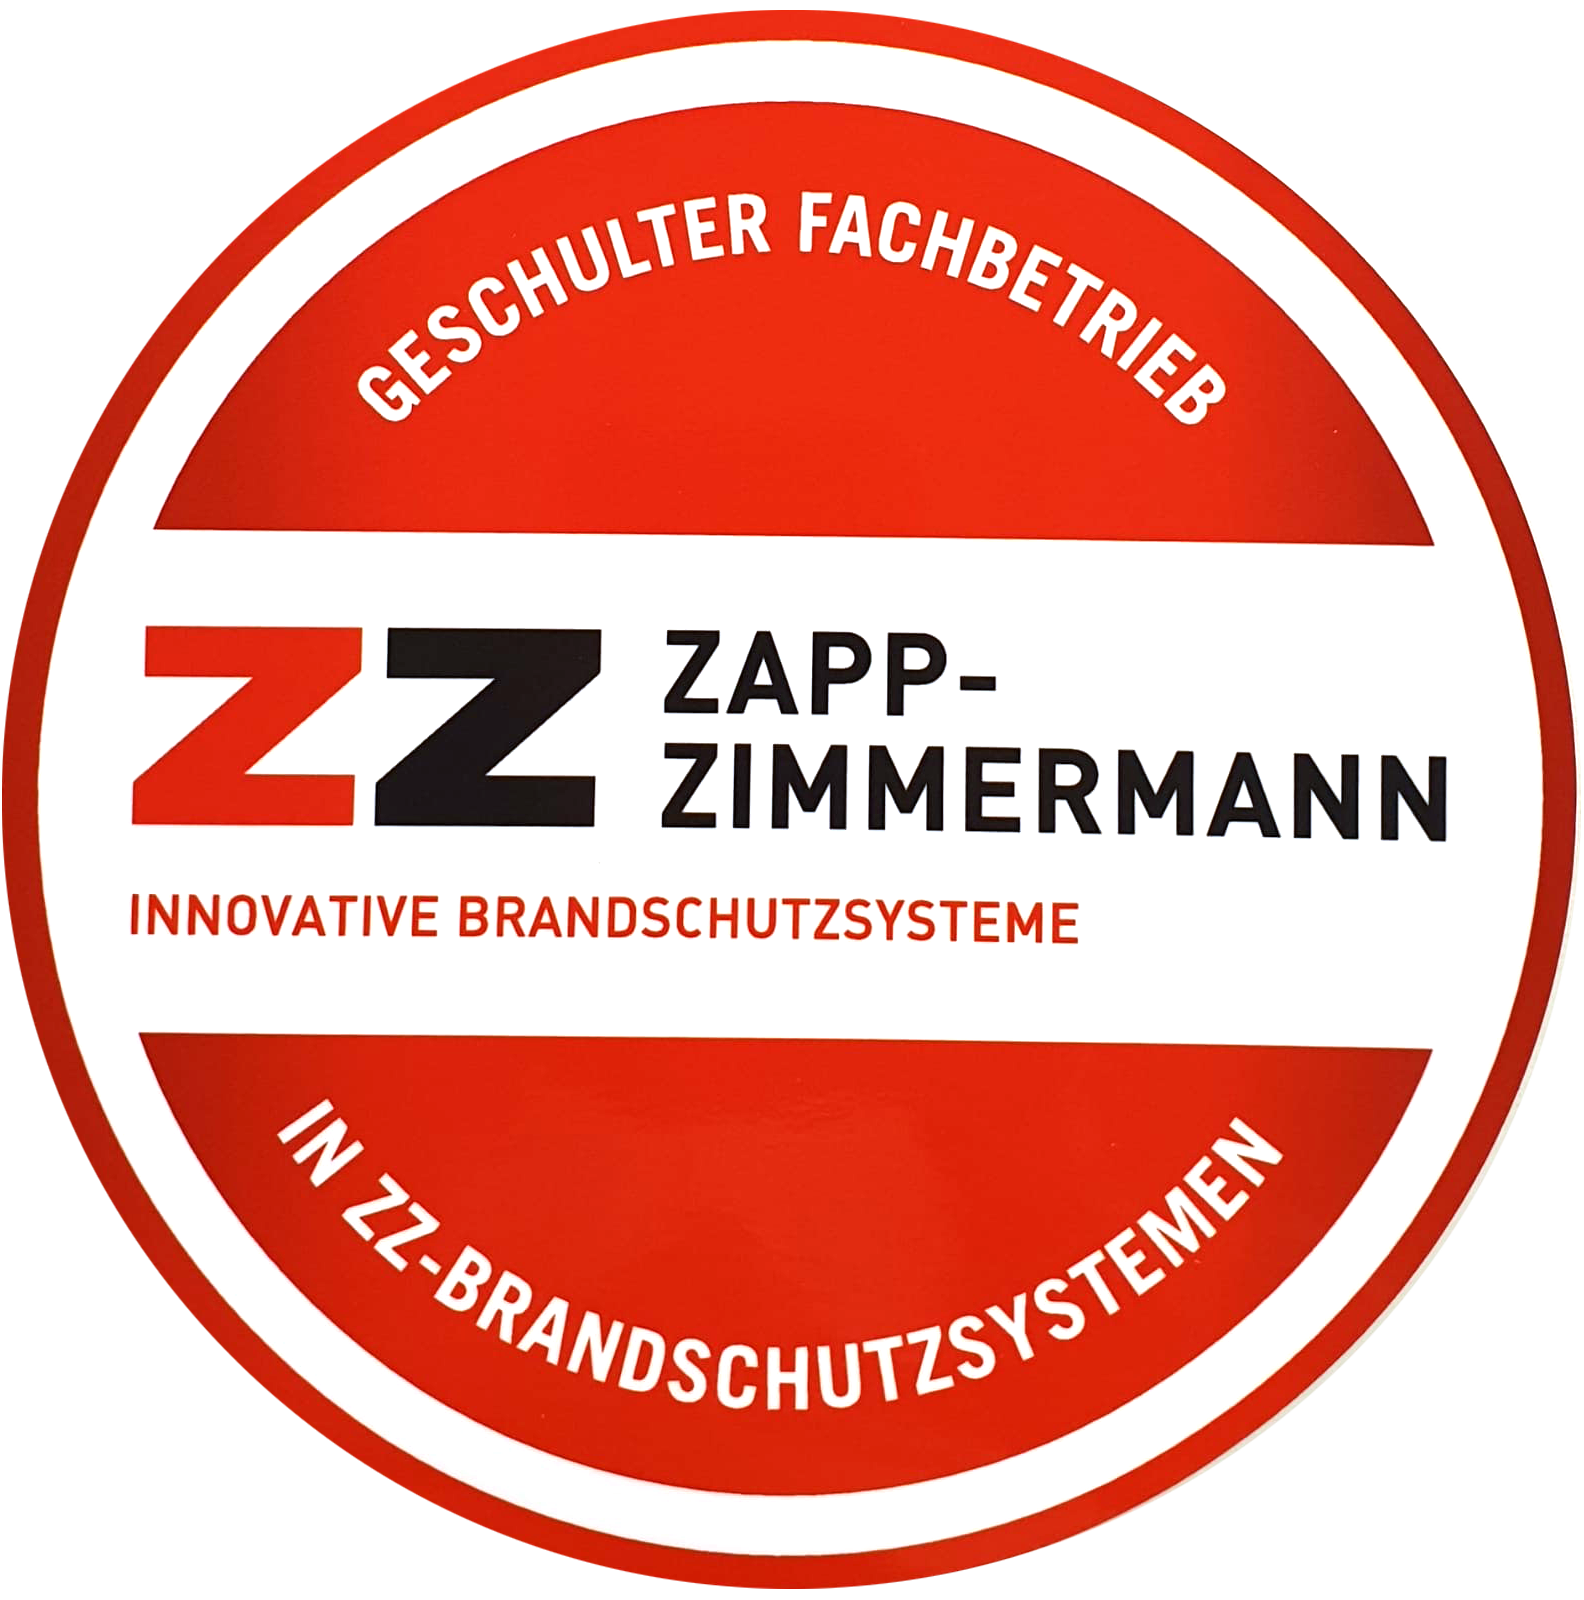 Geschulter Fachbetrieb in ZZ-Brandschutzsystemen